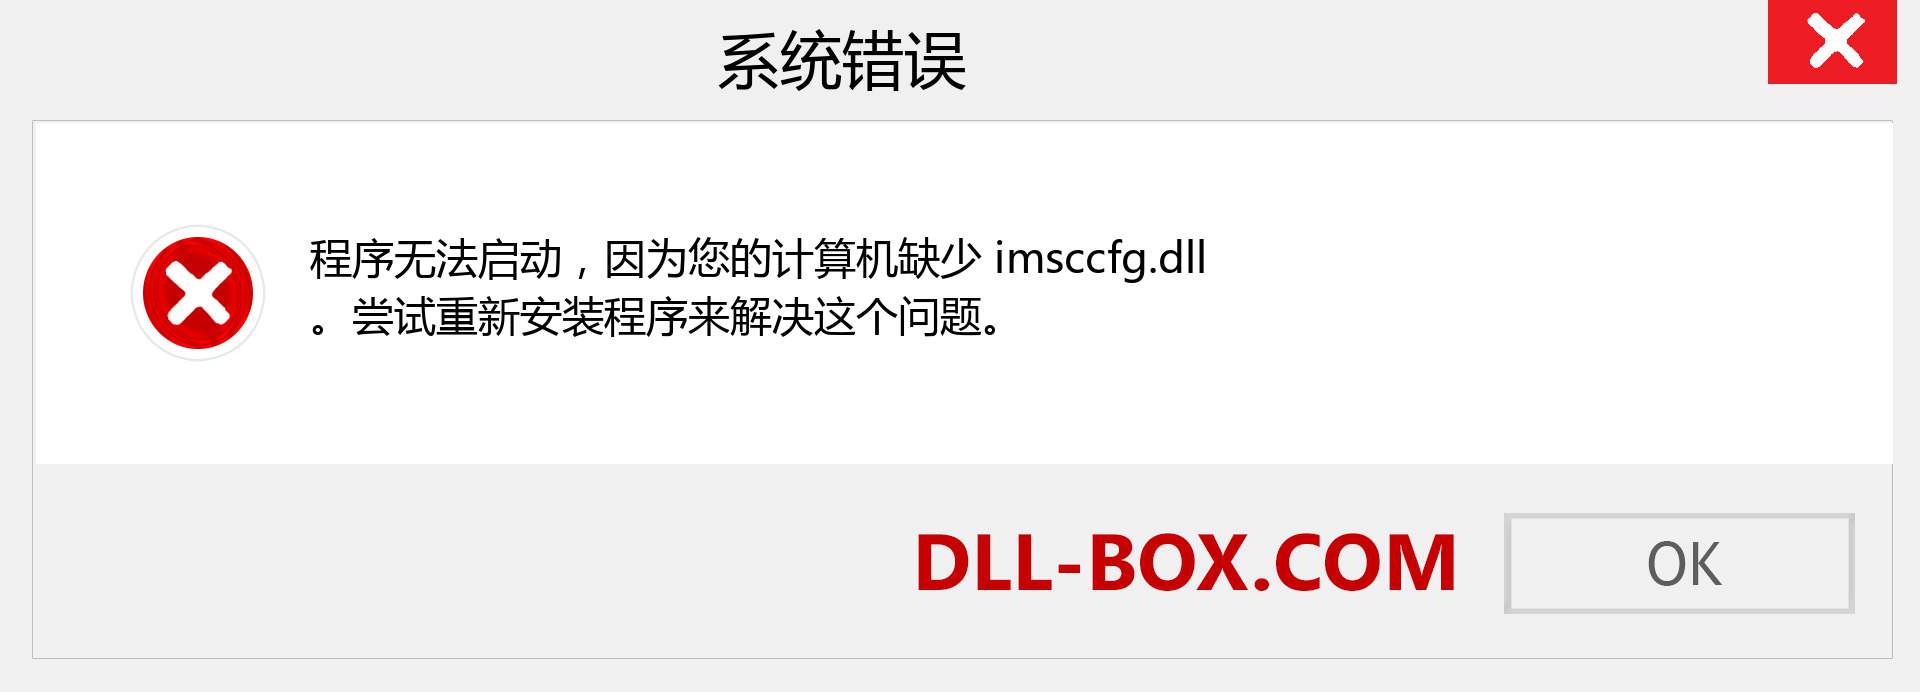 imsccfg.dll 文件丢失？。 适用于 Windows 7、8、10 的下载 - 修复 Windows、照片、图像上的 imsccfg dll 丢失错误